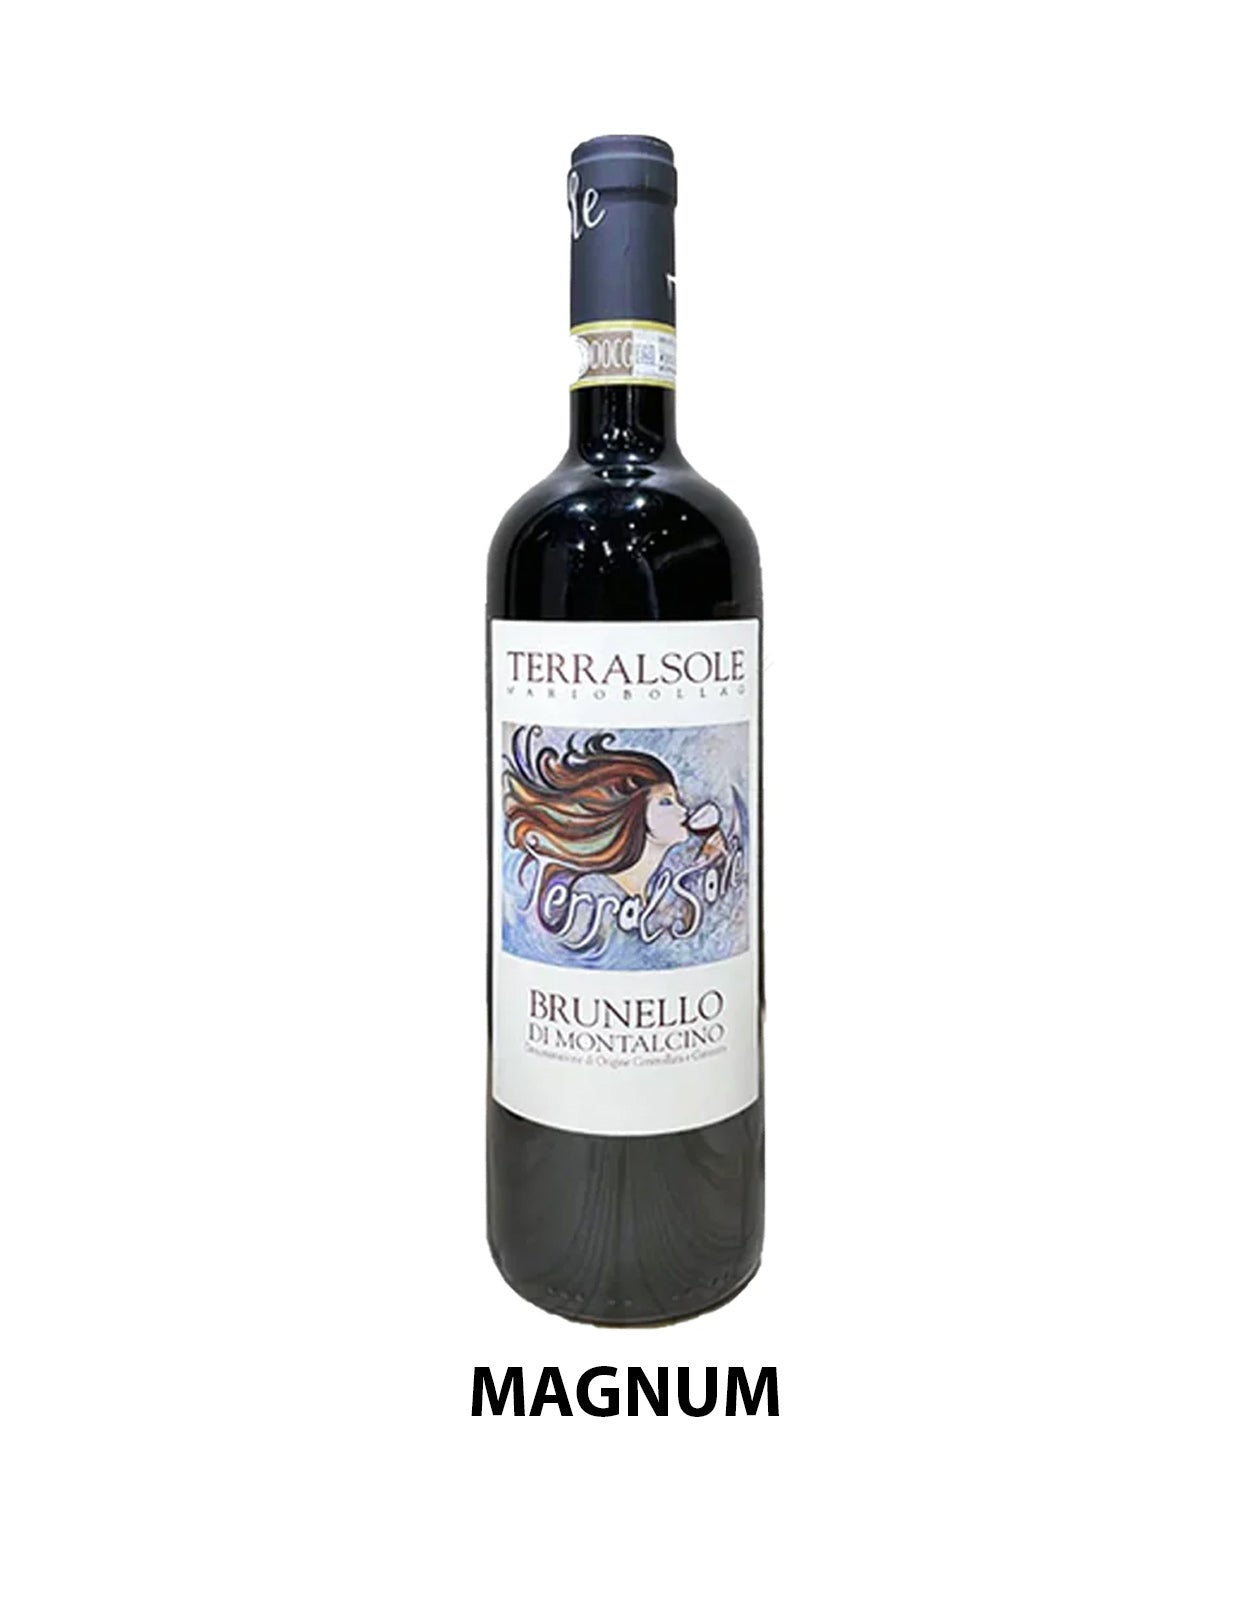 Terralsole Brunello di Montalcino 2016 - 1.5 Litre Bottle